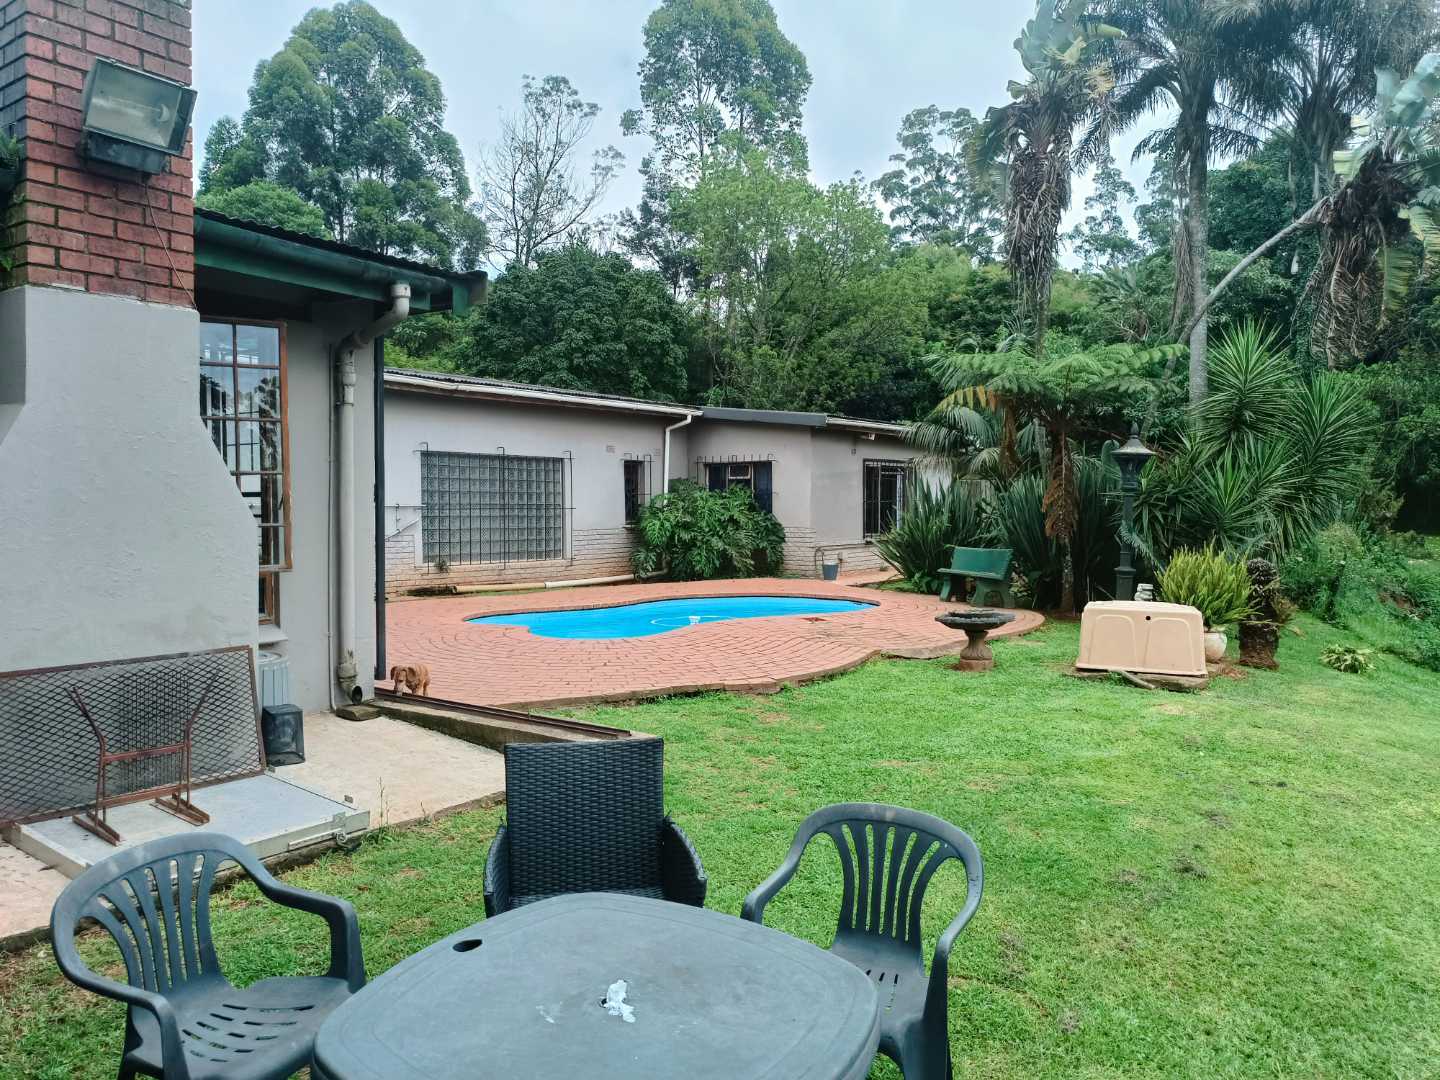 4 Bedroom Property for Sale in Blackridge KwaZulu-Natal